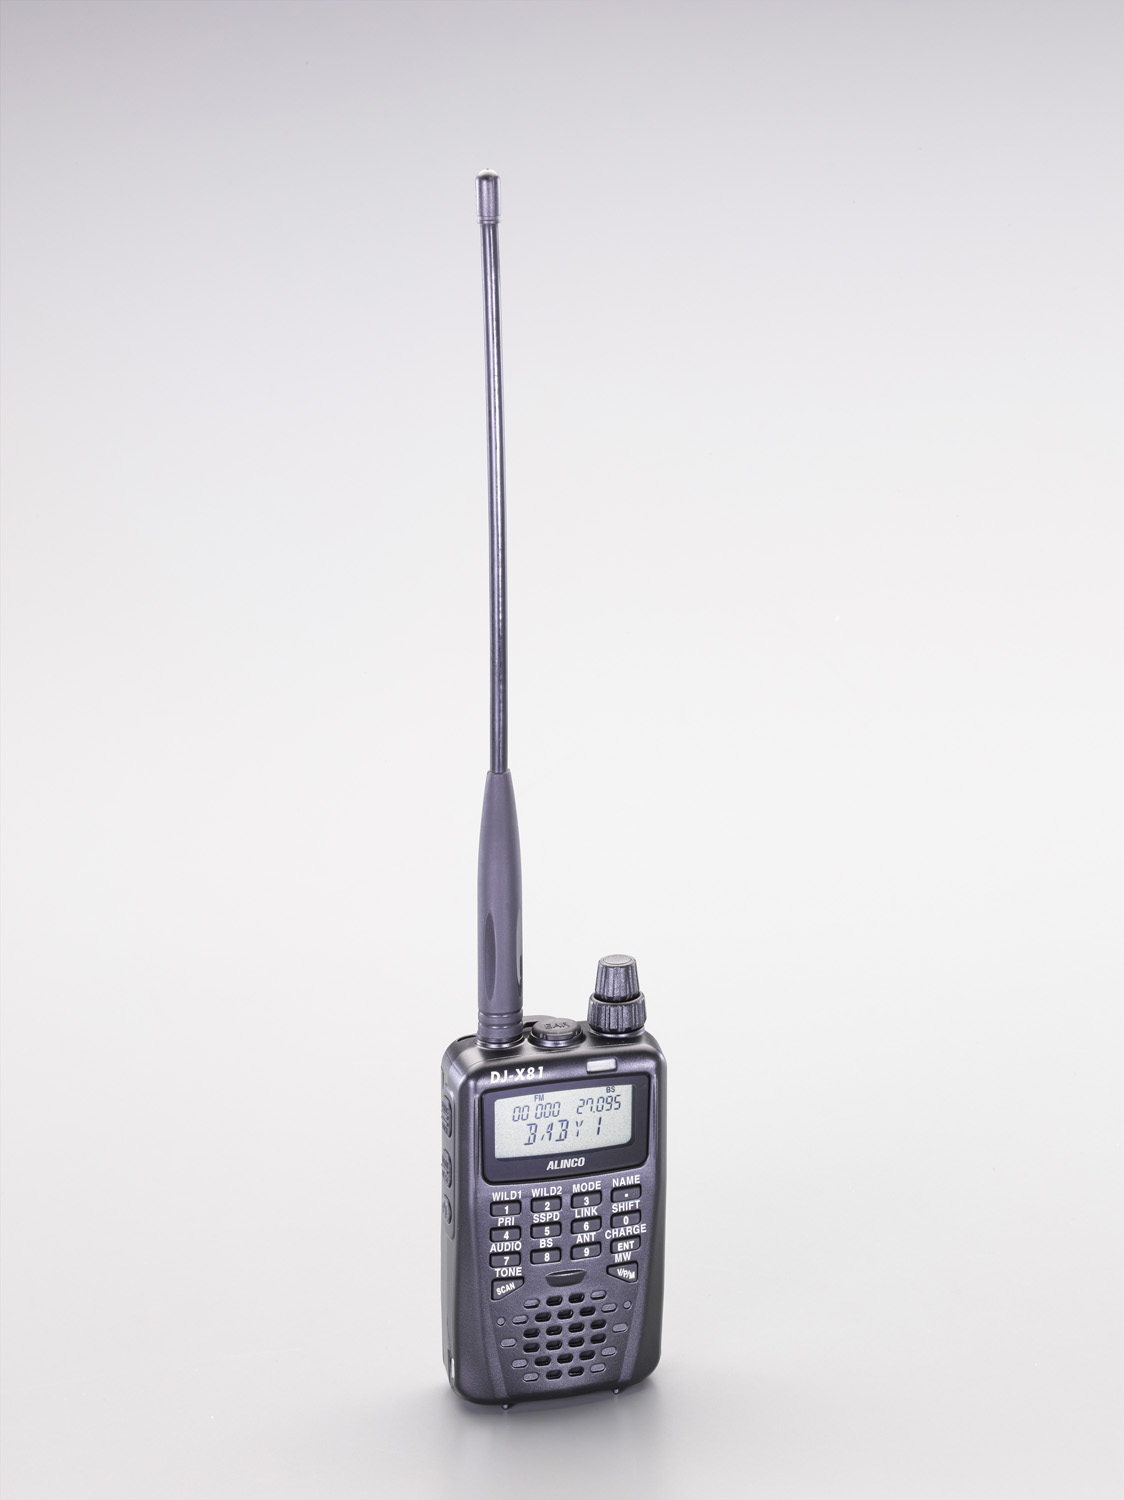 アルインコ 地上デジタル放送音声受信対応広帯域受信機 DJ-X81